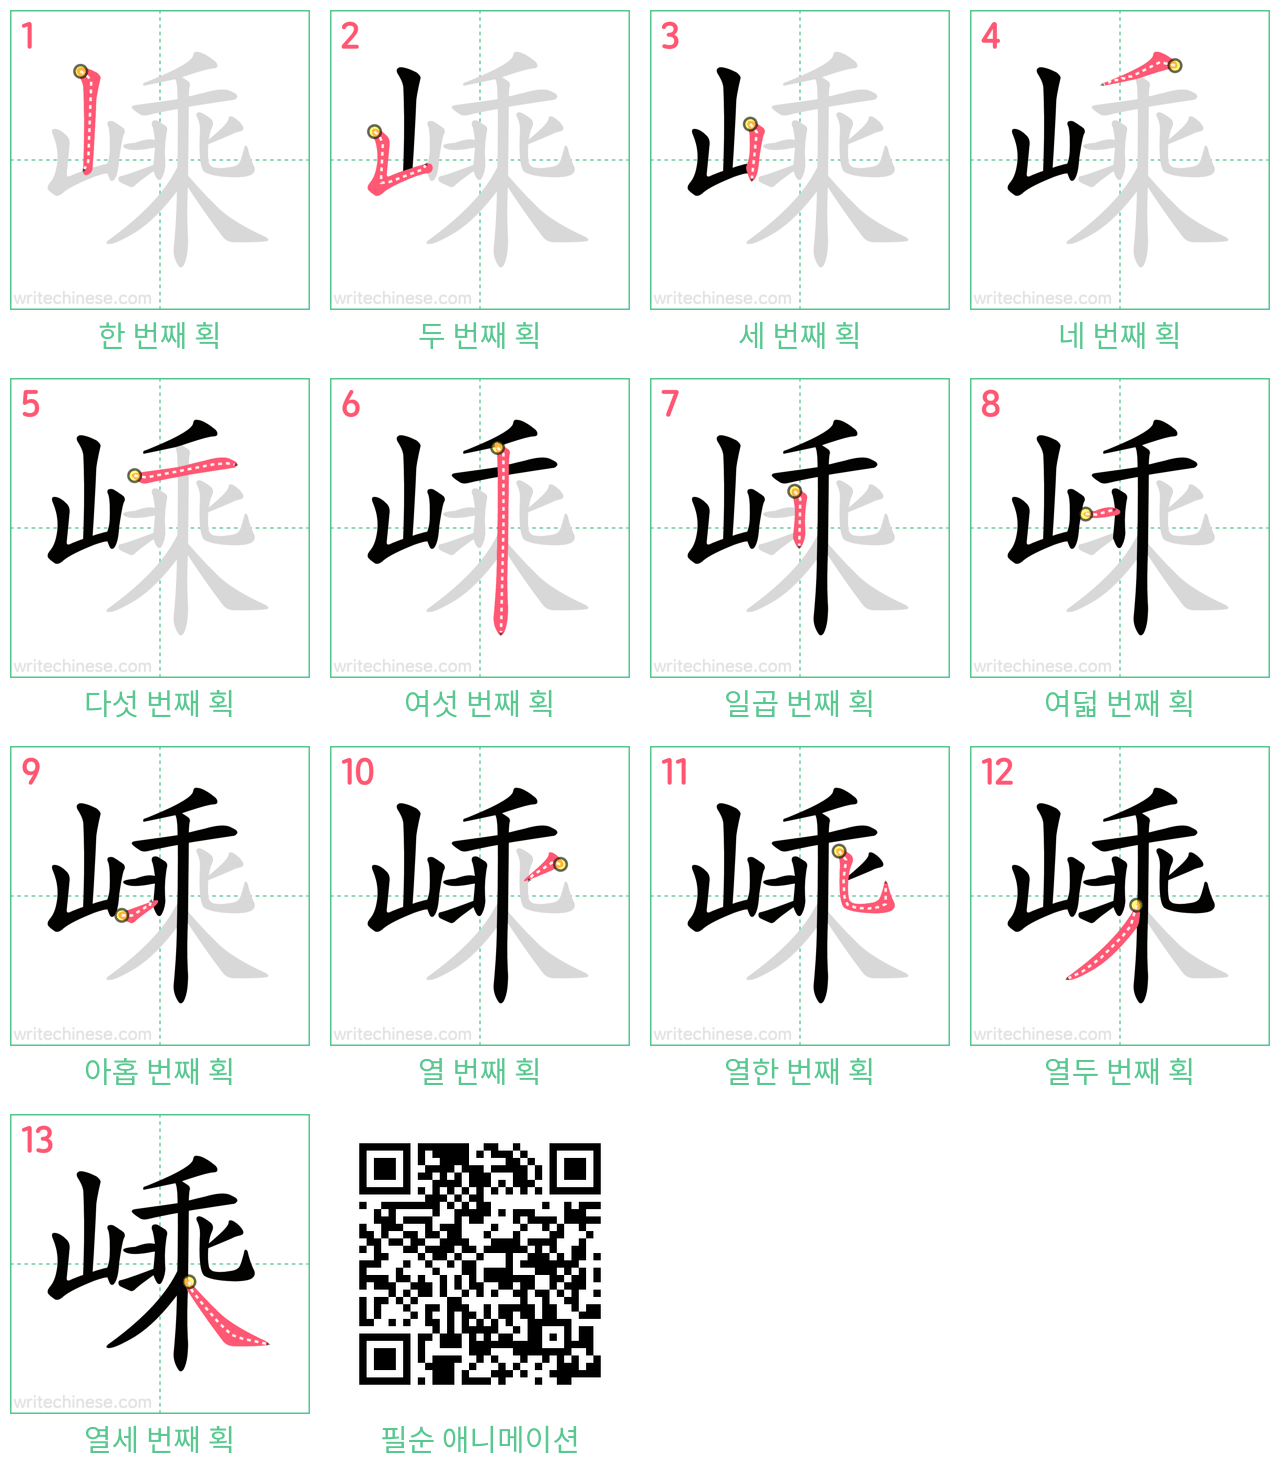 嵊 step-by-step stroke order diagrams